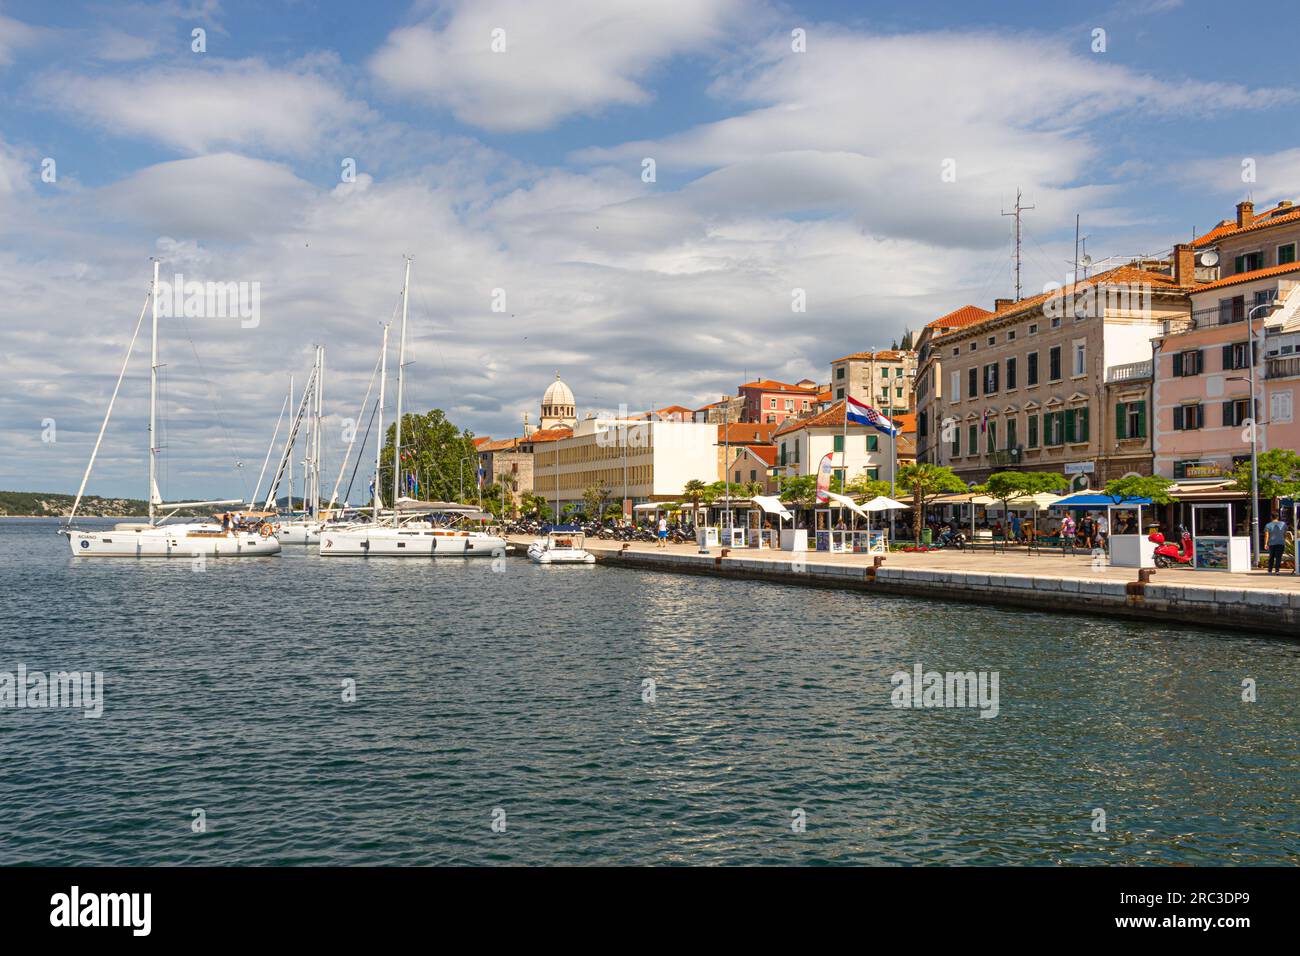 Le port et la promenade de la ville de Sibinik en Croatie Banque D'Images